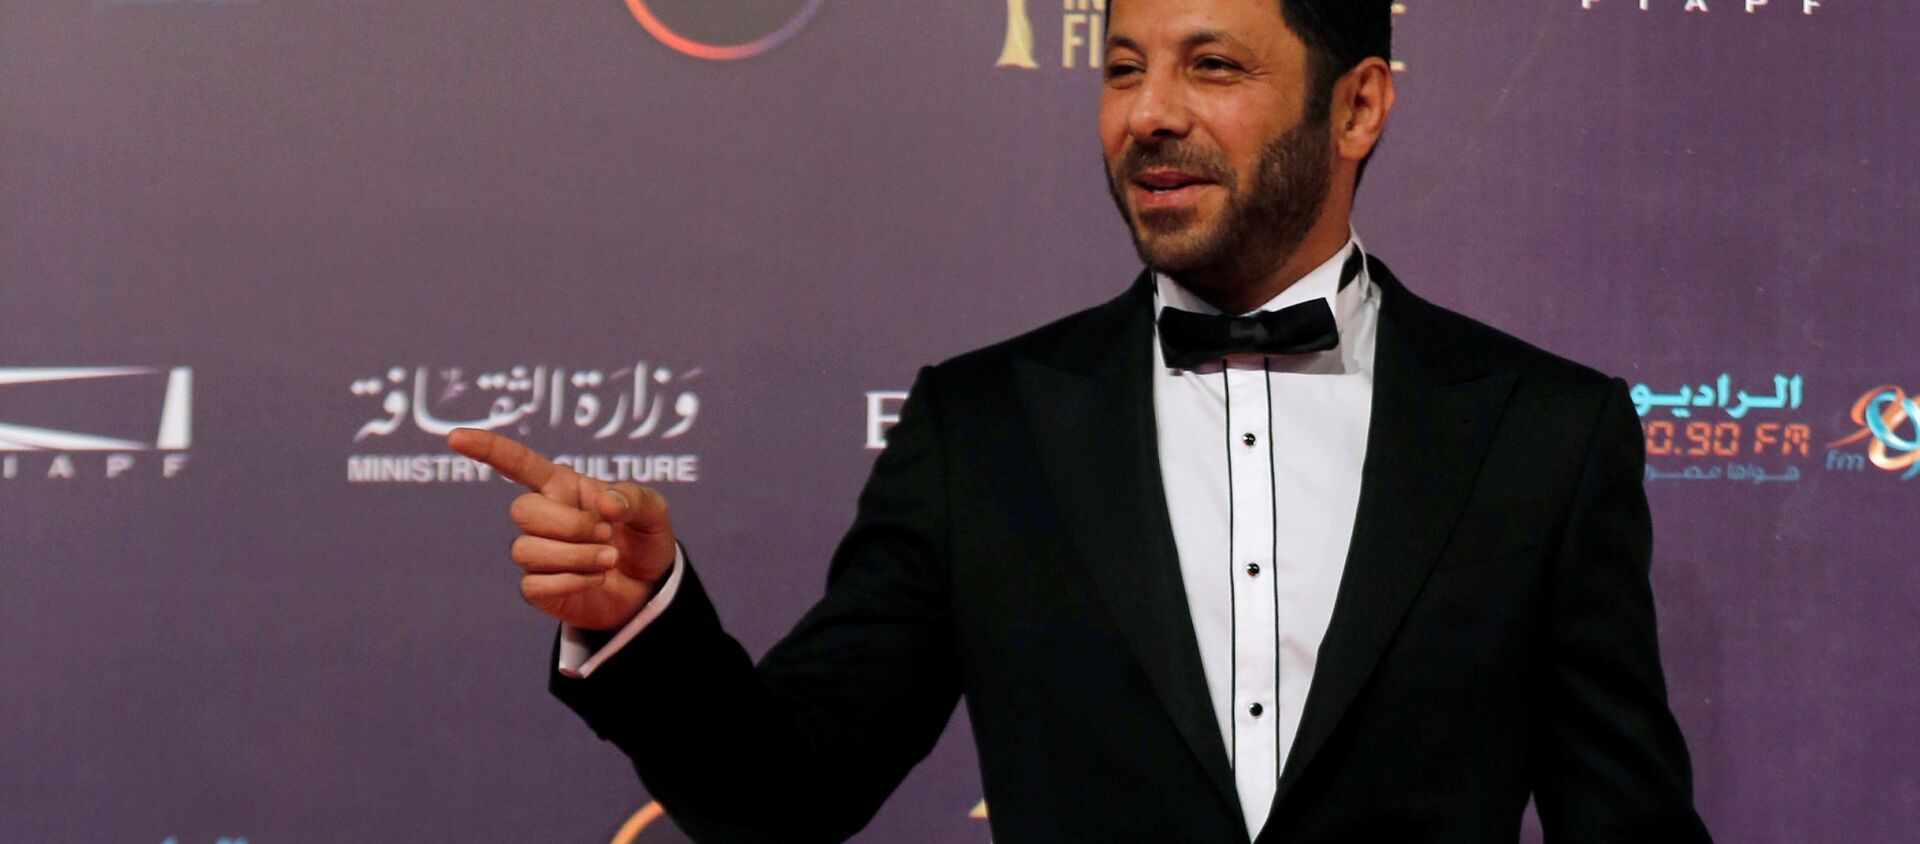  الممثل المصري إياد نصار خلال مهرجان القاهرة السينمائي الـ 39، مصر 21 نوفمبر/ كانون الأول 2017 - سبوتنيك عربي, 1920, 28.04.2021